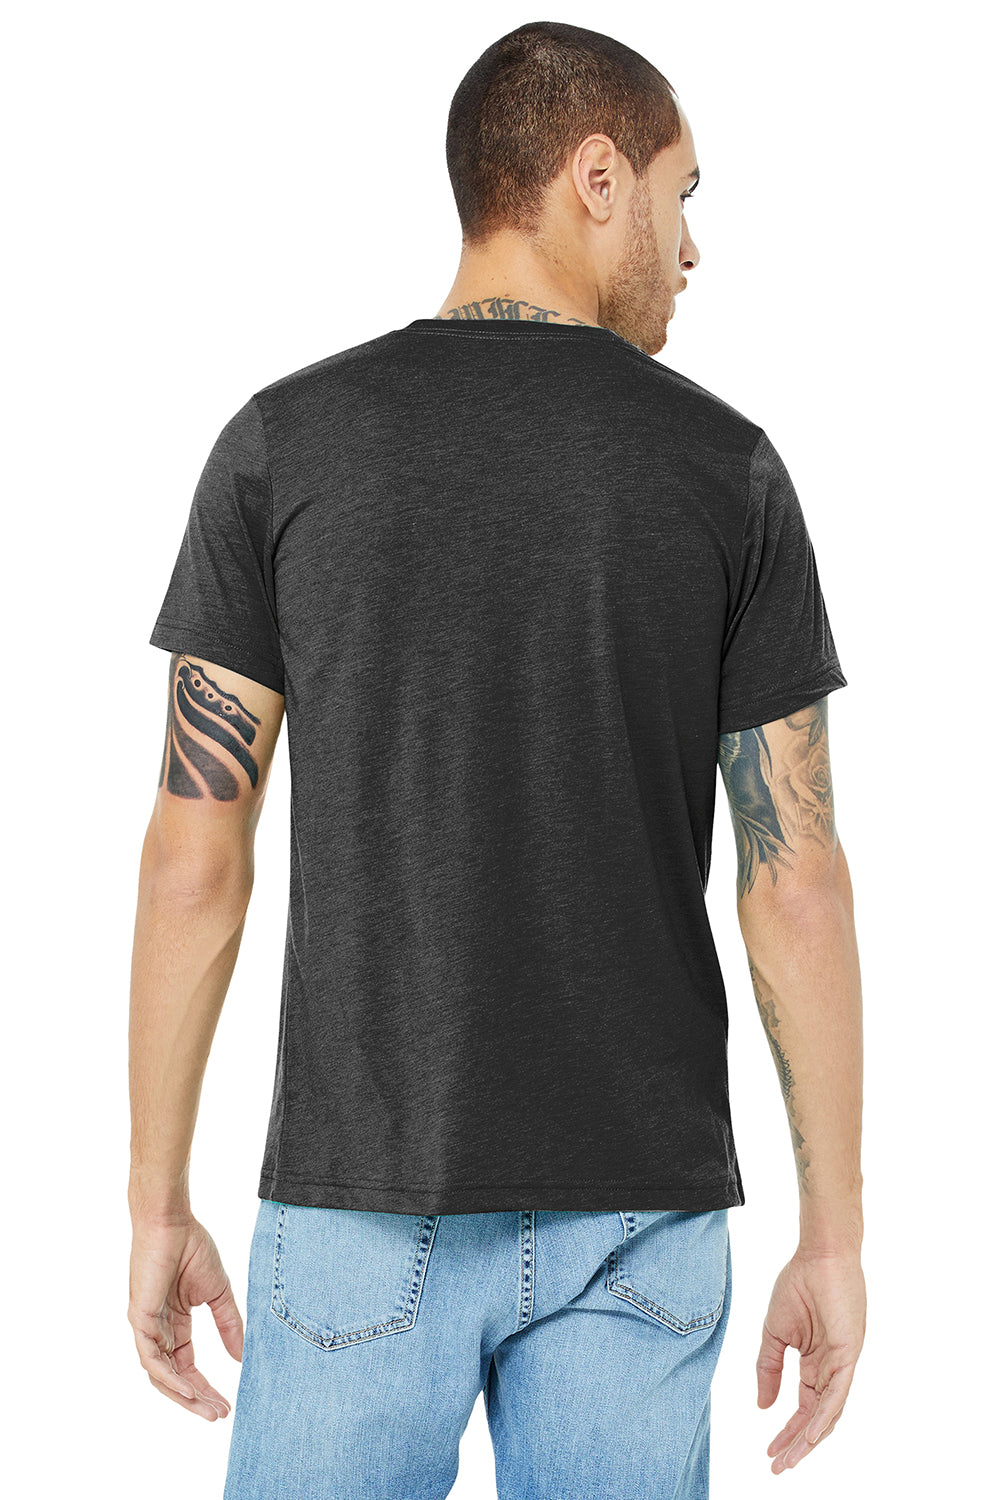 Bella + Canvas BC3413/3413C/3413 Mens Short Sleeve Crewneck T-Shirt Charcoal Black Model Back